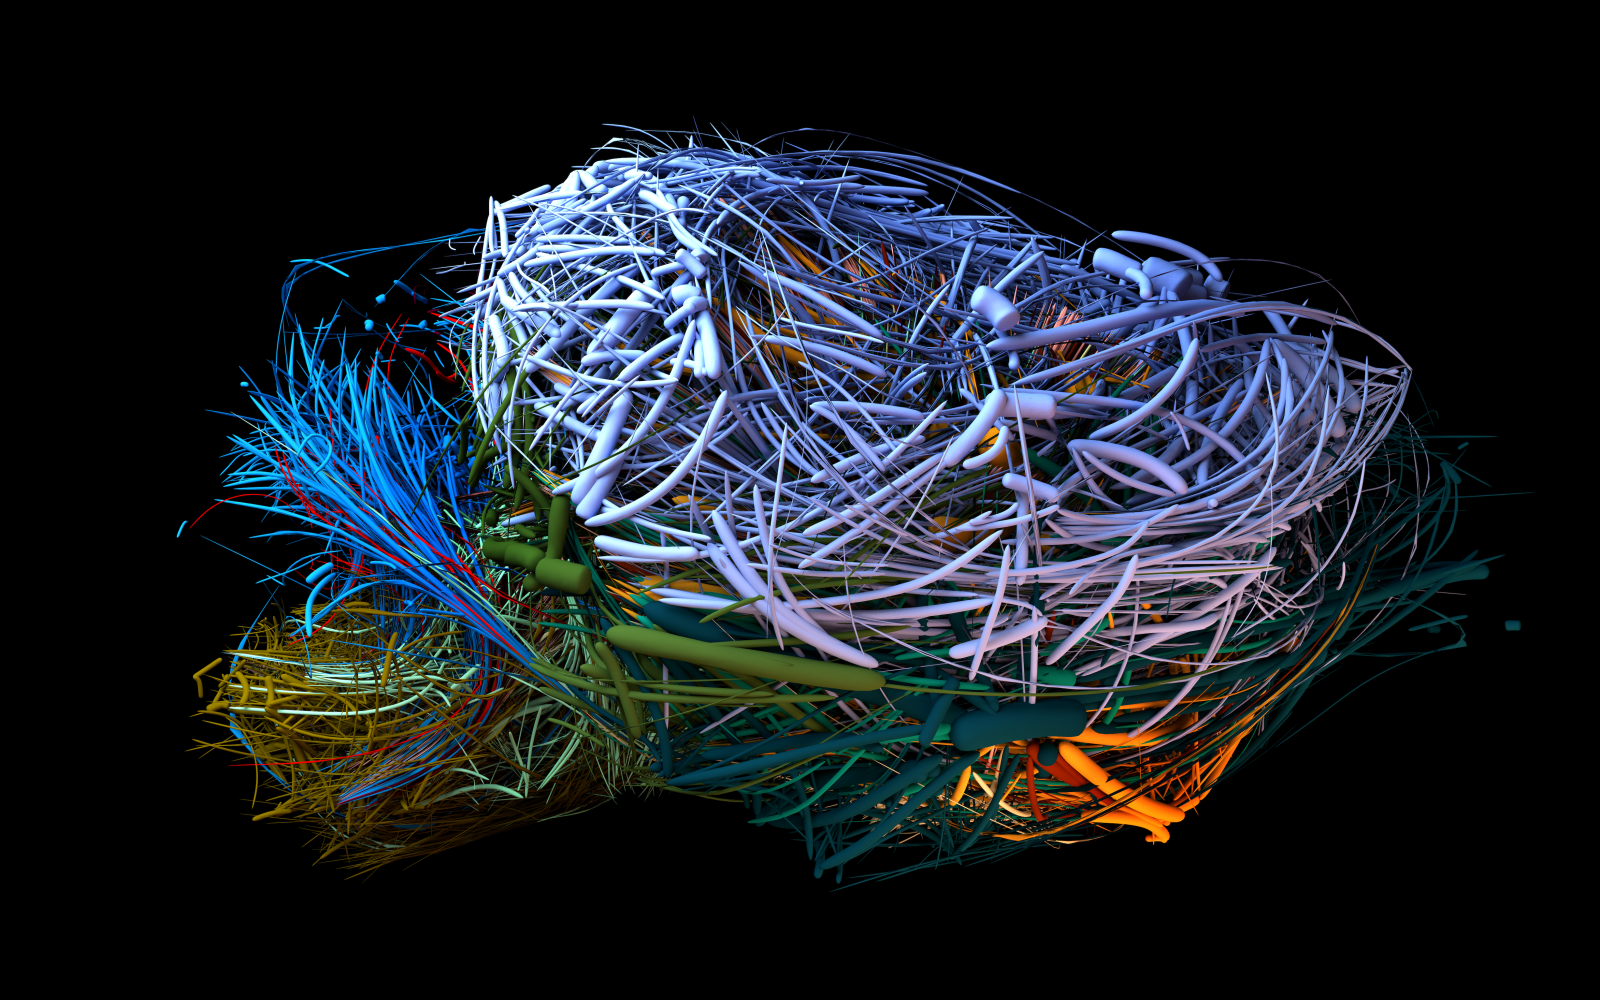 Visualisierung des Konnektoms eines Maus-Gehirns in verschiedenen Farben